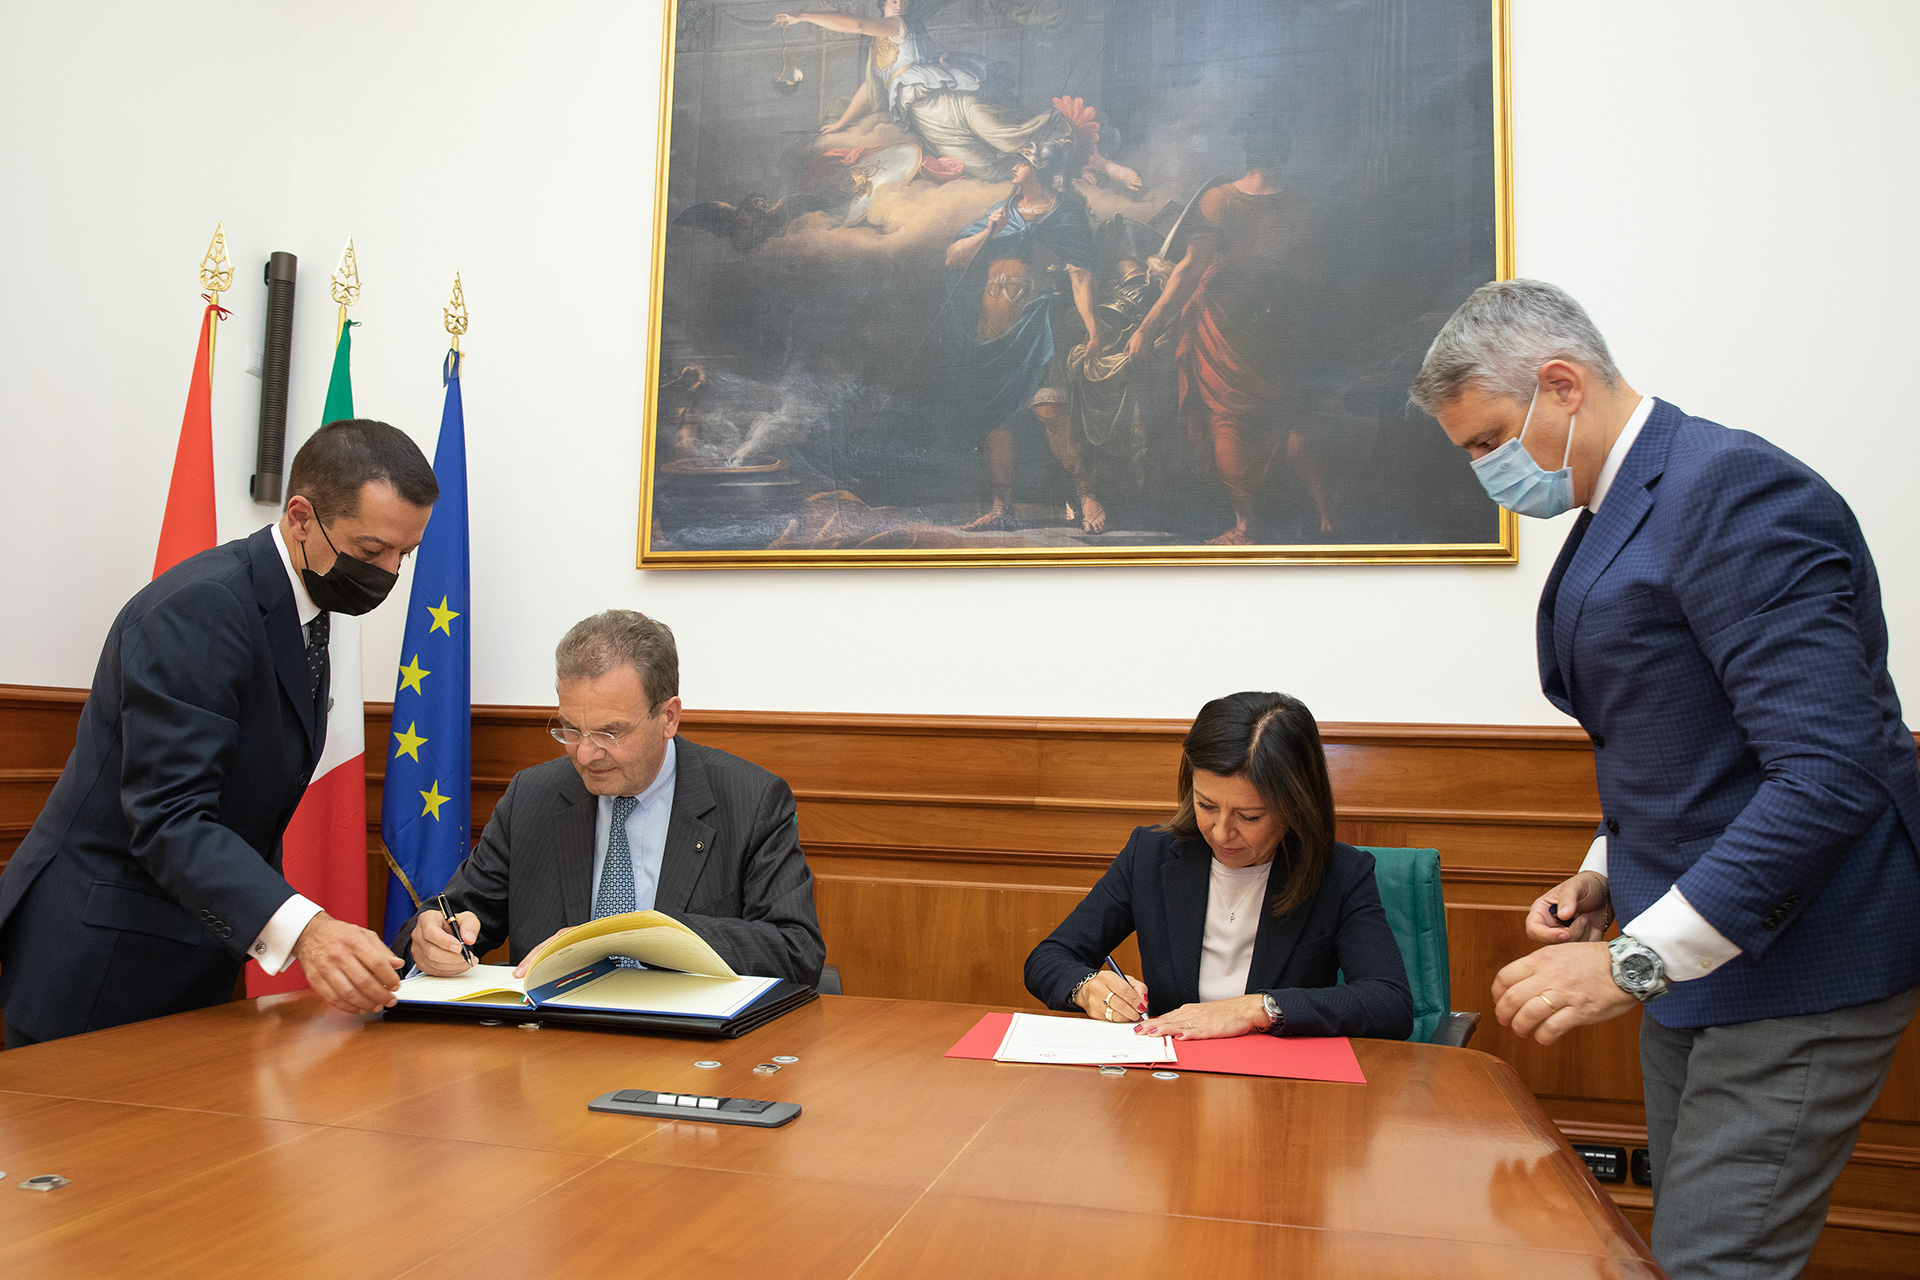 Accordo tra il Ministero dei Trasporti italiano e l’Ordine di Malta per la salvaguardia della vita in mare